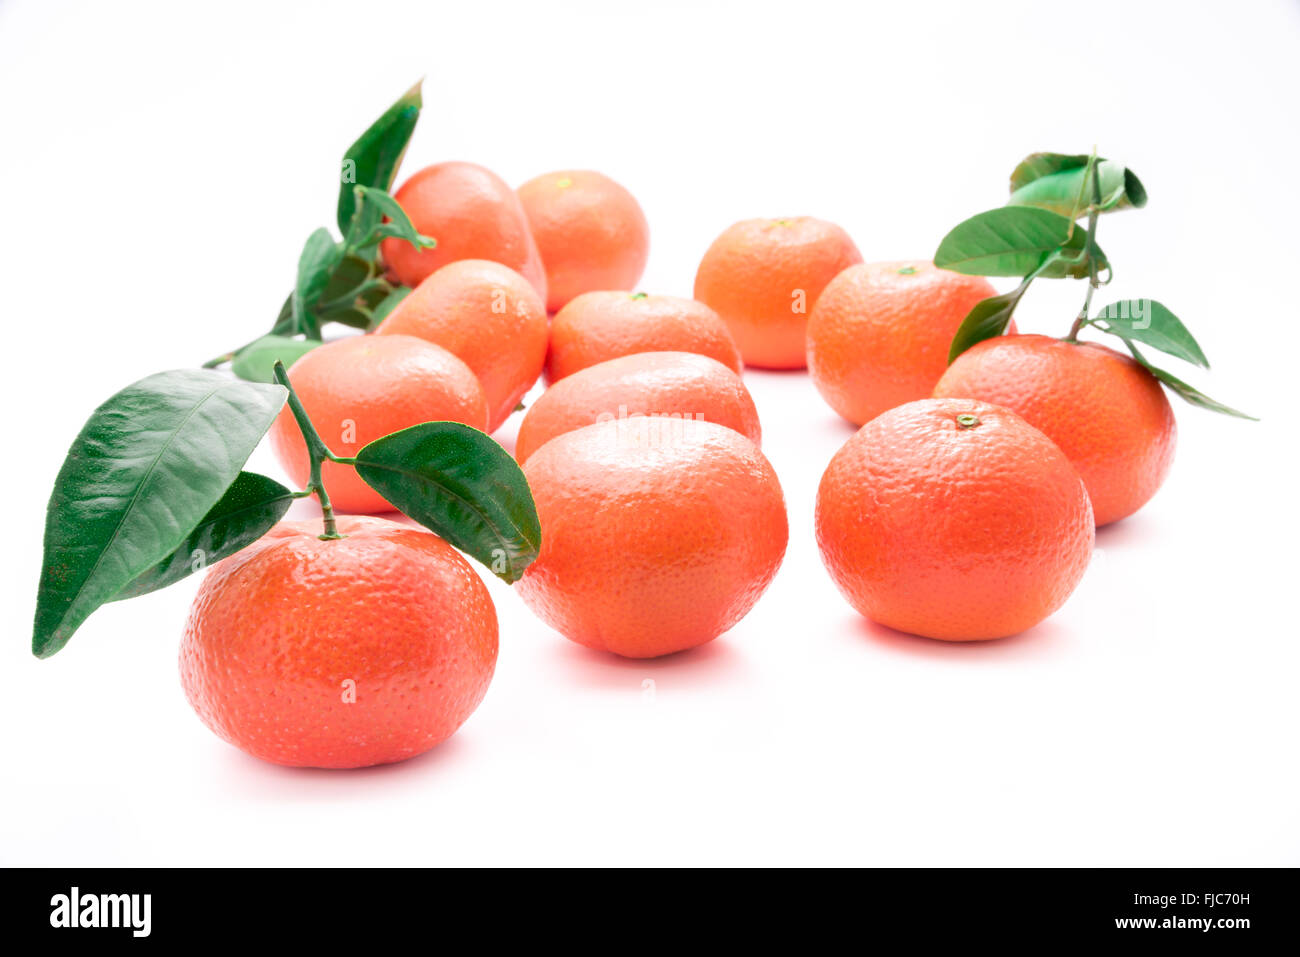 Mandarinas frescas con tallos y hojas verdes Foto de stock